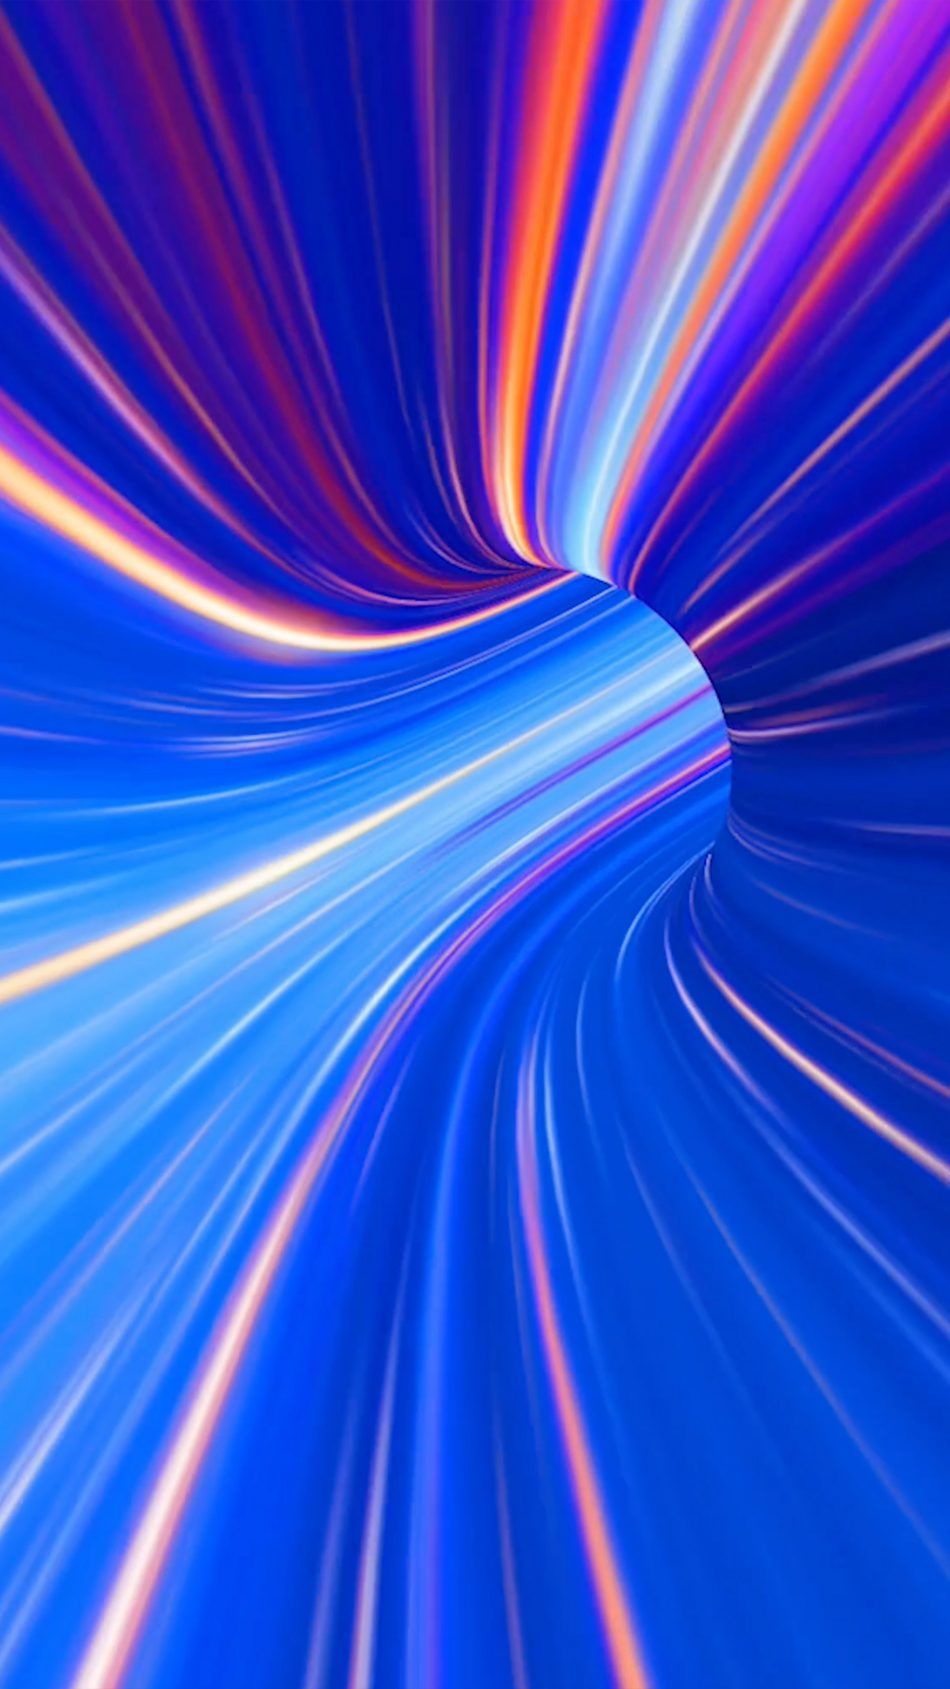 Spectrum Colorful Waves Tunnel 4k Ultra HD Mobile Wallpaper HD Neon Wallpaper 4k